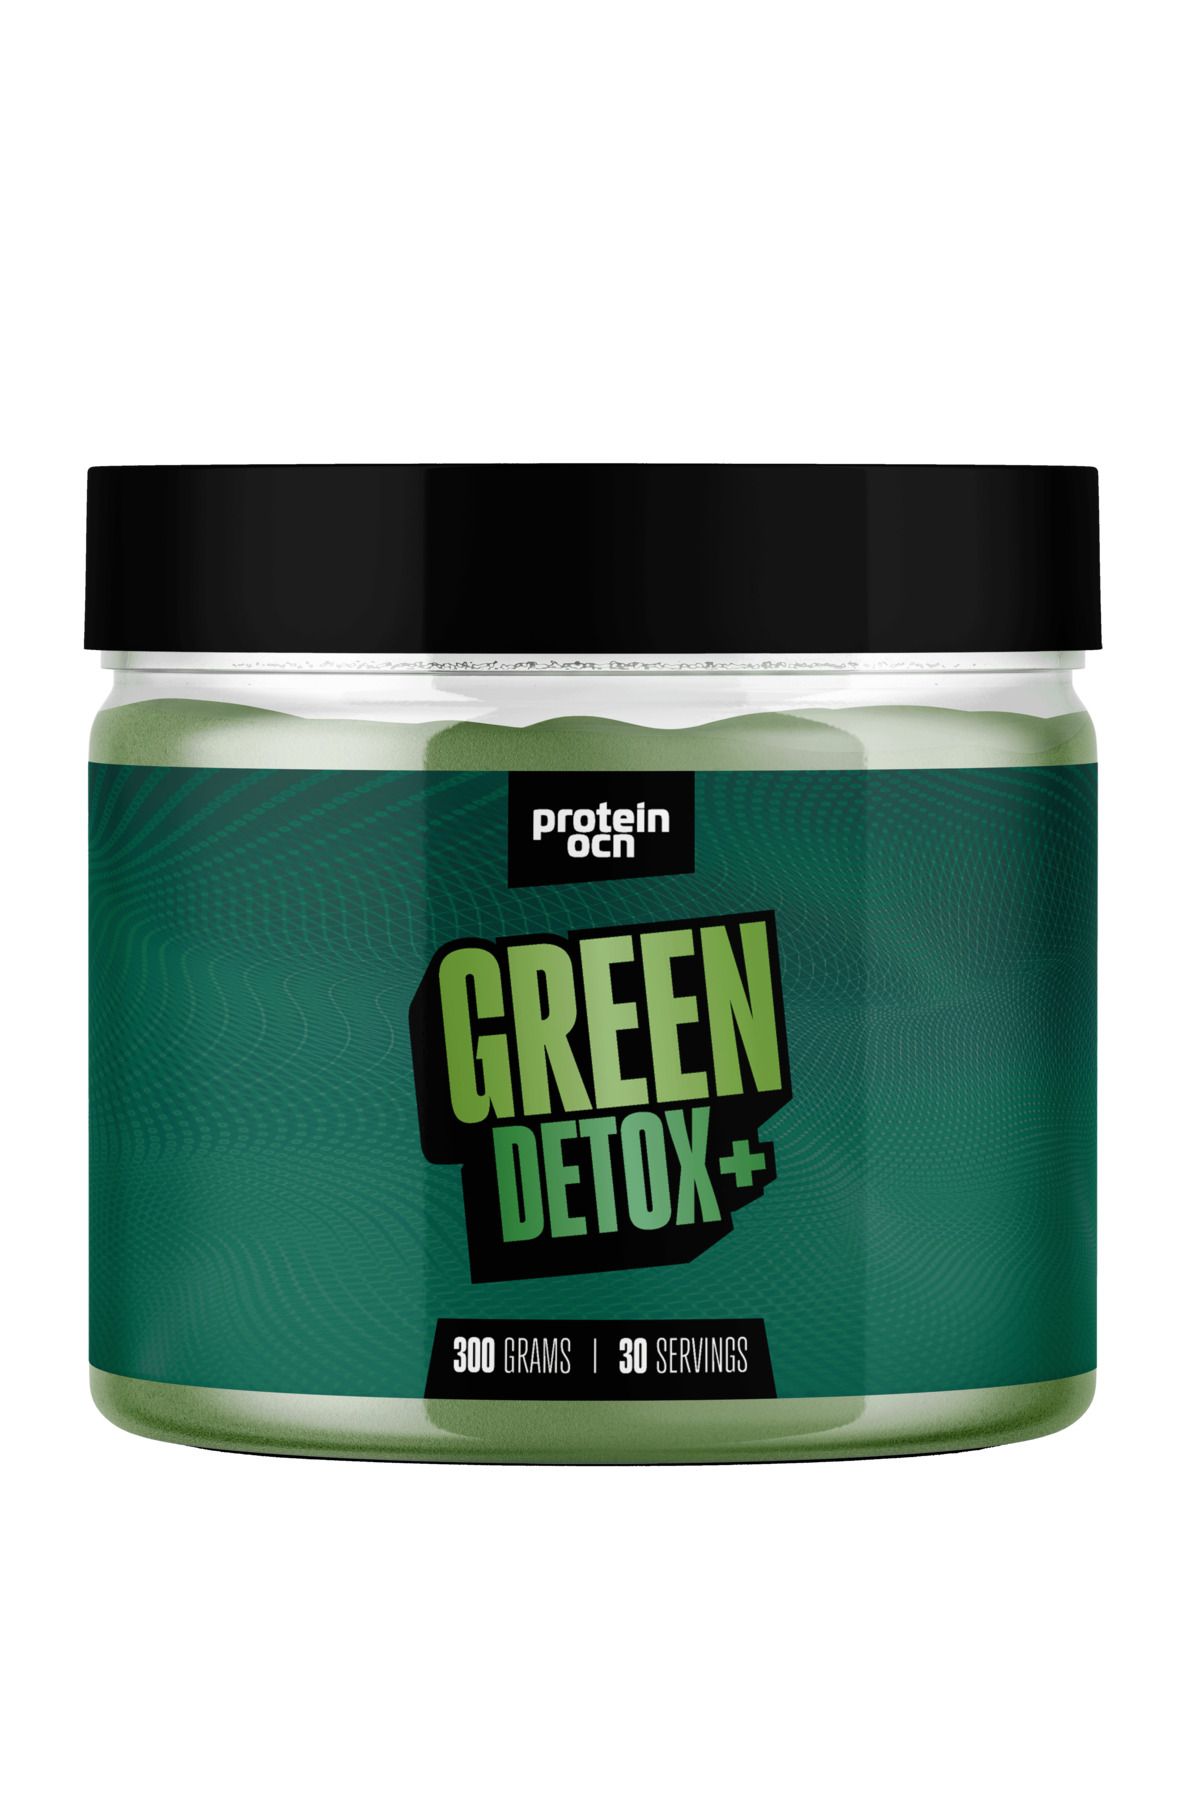 Proteinocean Green Detox+™ 300g - 30 Servis